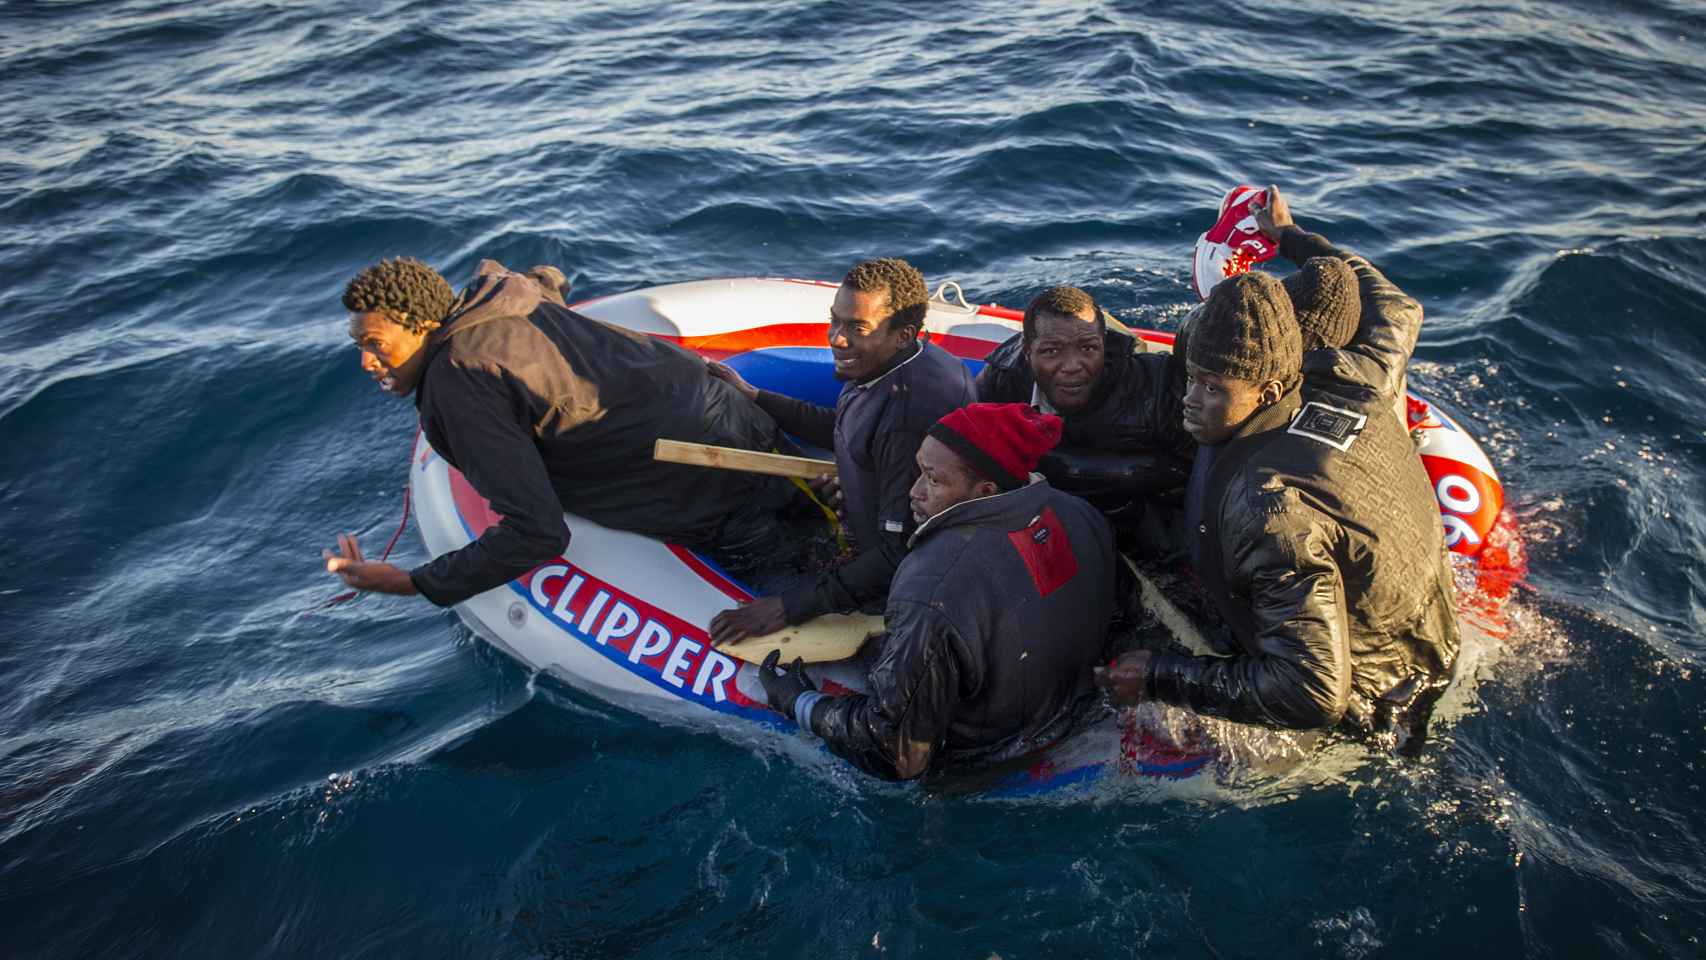 Inmigrantes a la deriva en una barcaza de plástico que las mafias les cobran a 200 euros por persona. La imagen está tomada en 2012, minutos antes de que Salvamento Marítimo salvara de morir ahogados a los subsaharianos.